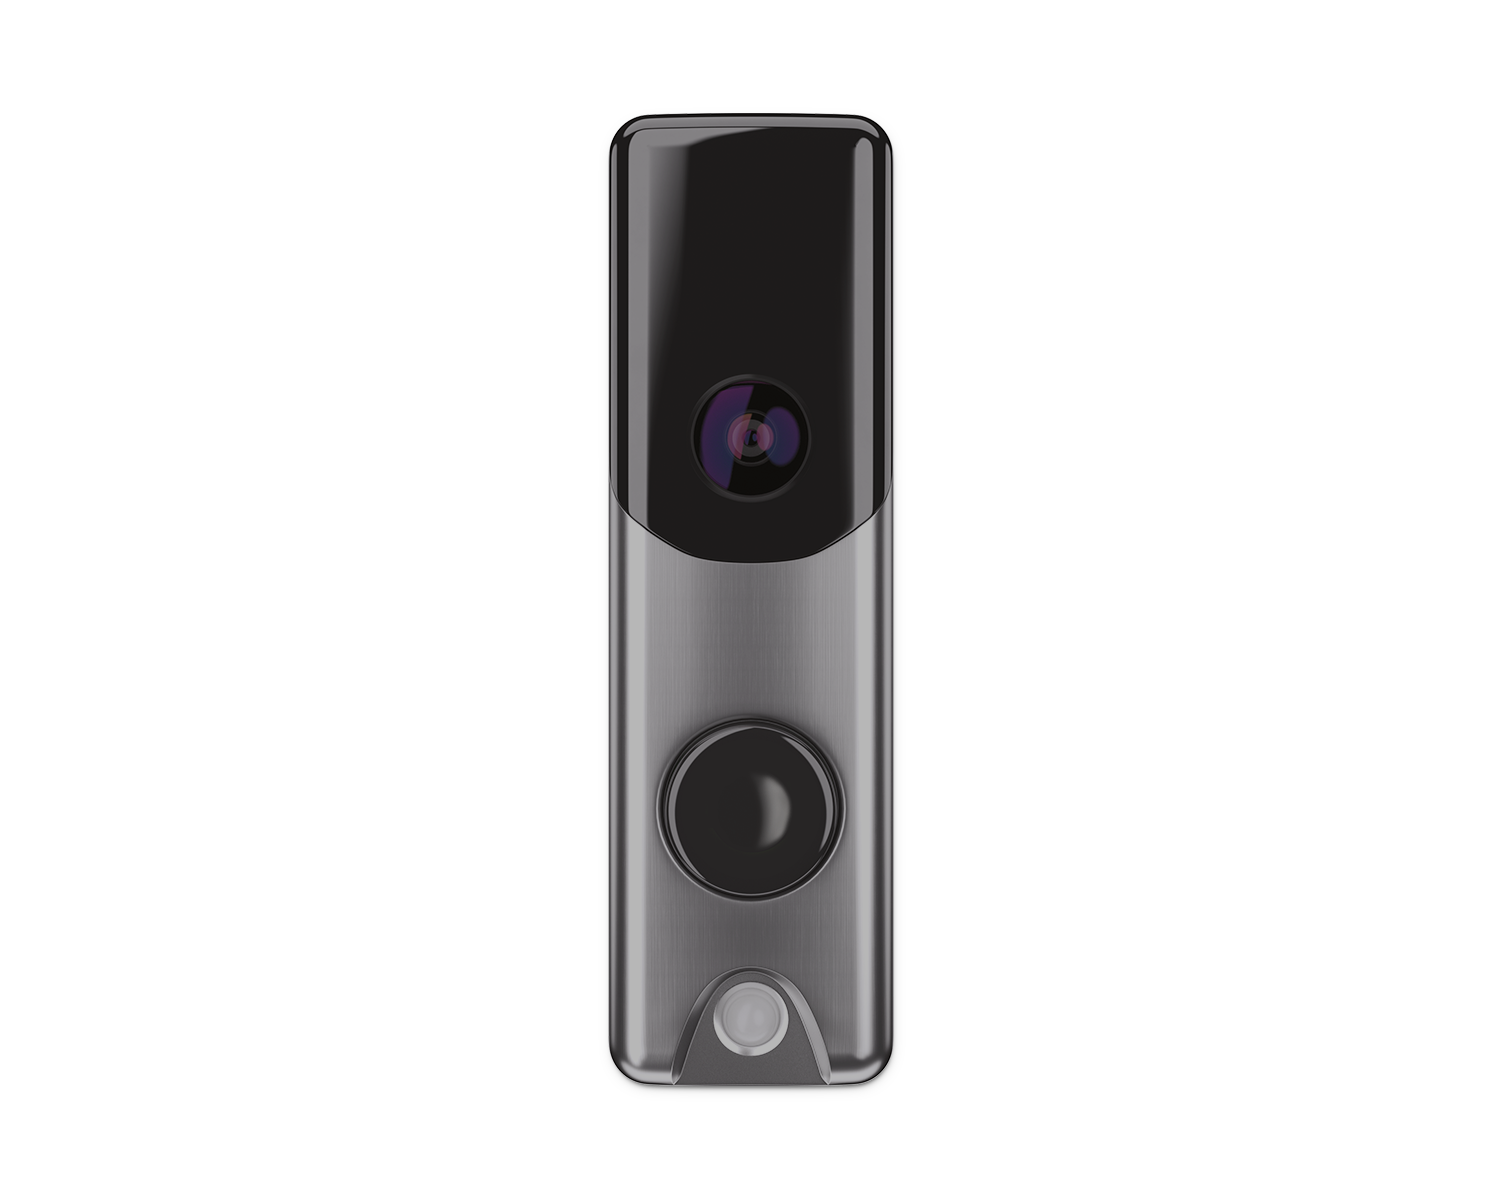 Video Doorbell Camera Silver